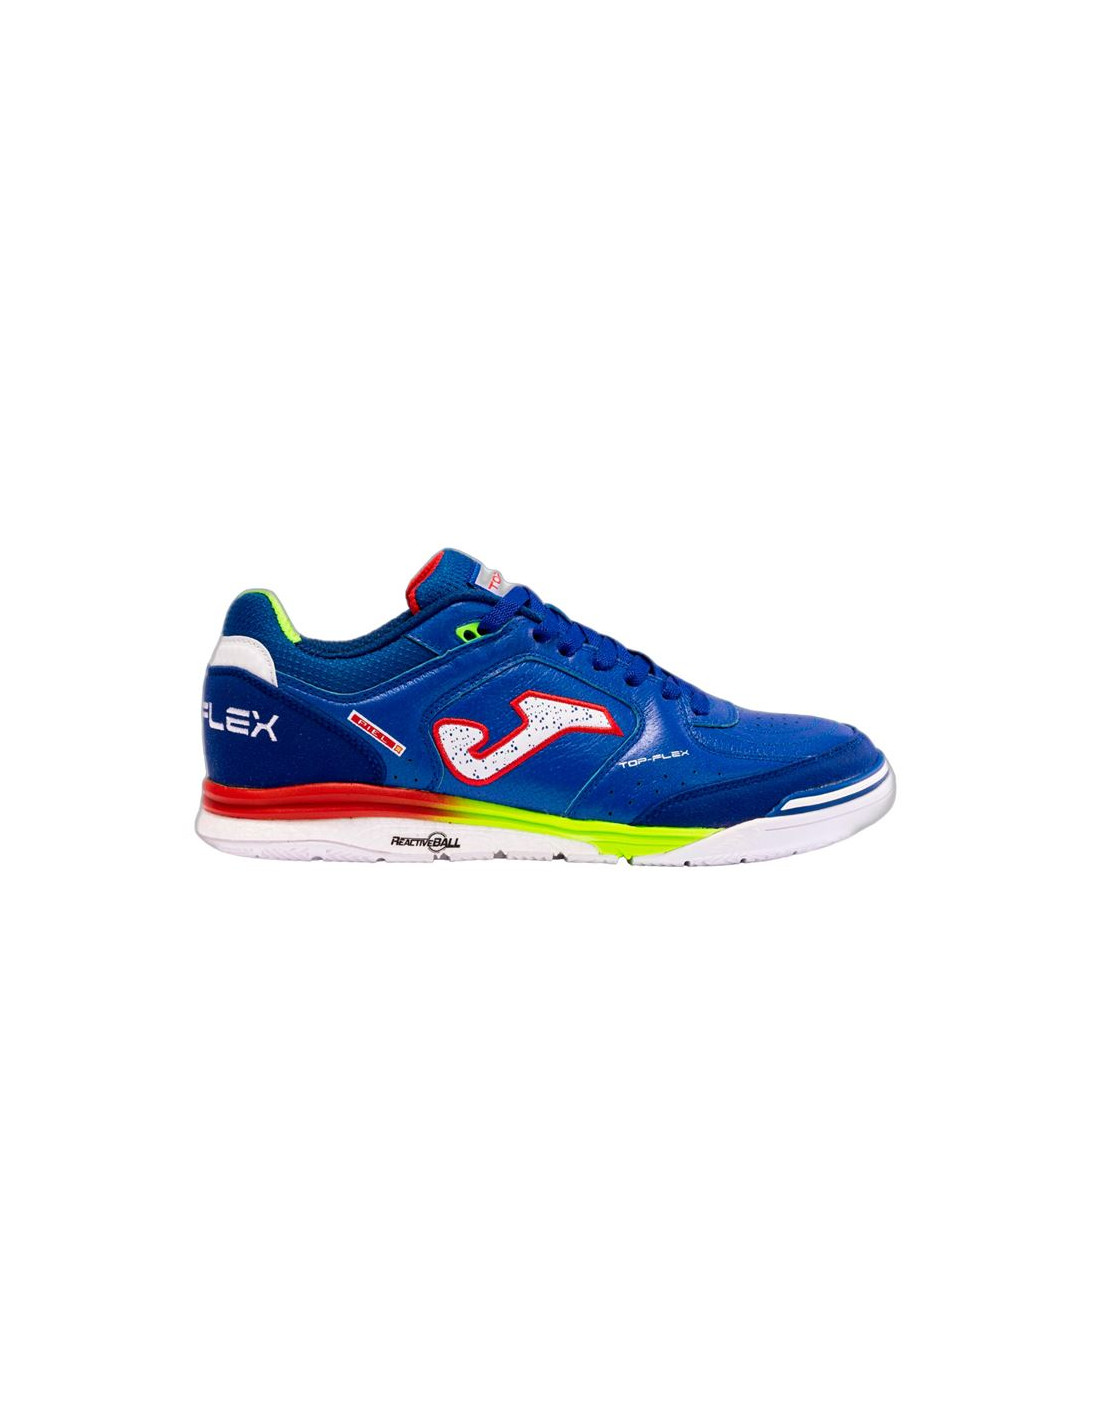 Zapatillas deportivas futbol sala para niños, de la marca Joma, en color  azul. Joma JR2404 Talla 31 Color AZUL